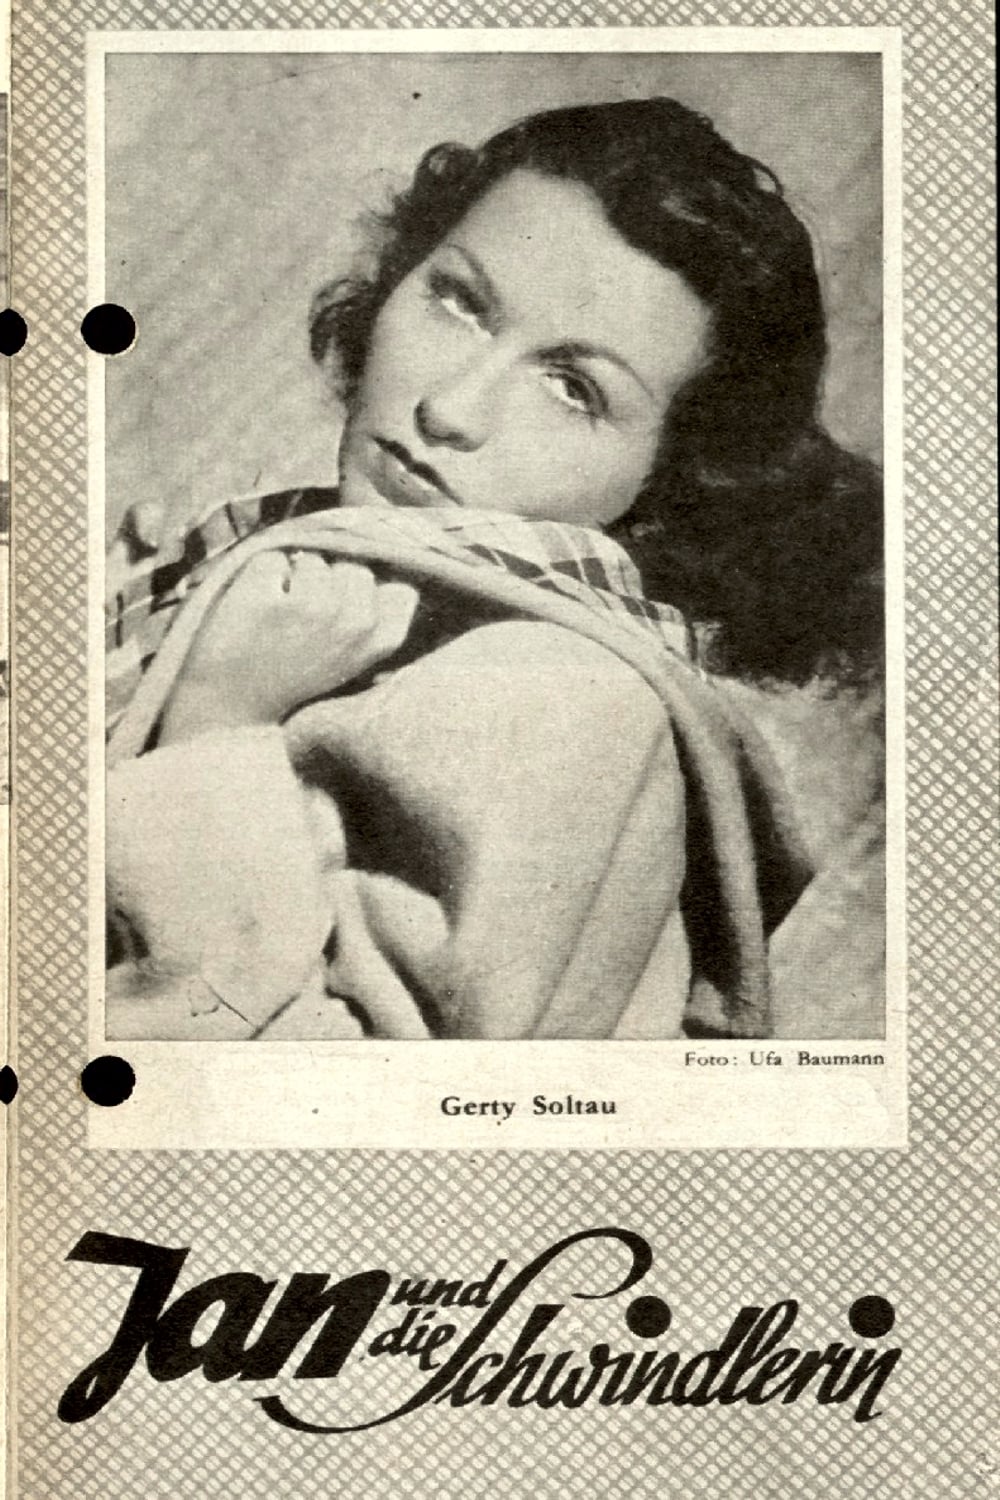 Jan und die Schwindlerin (1947)